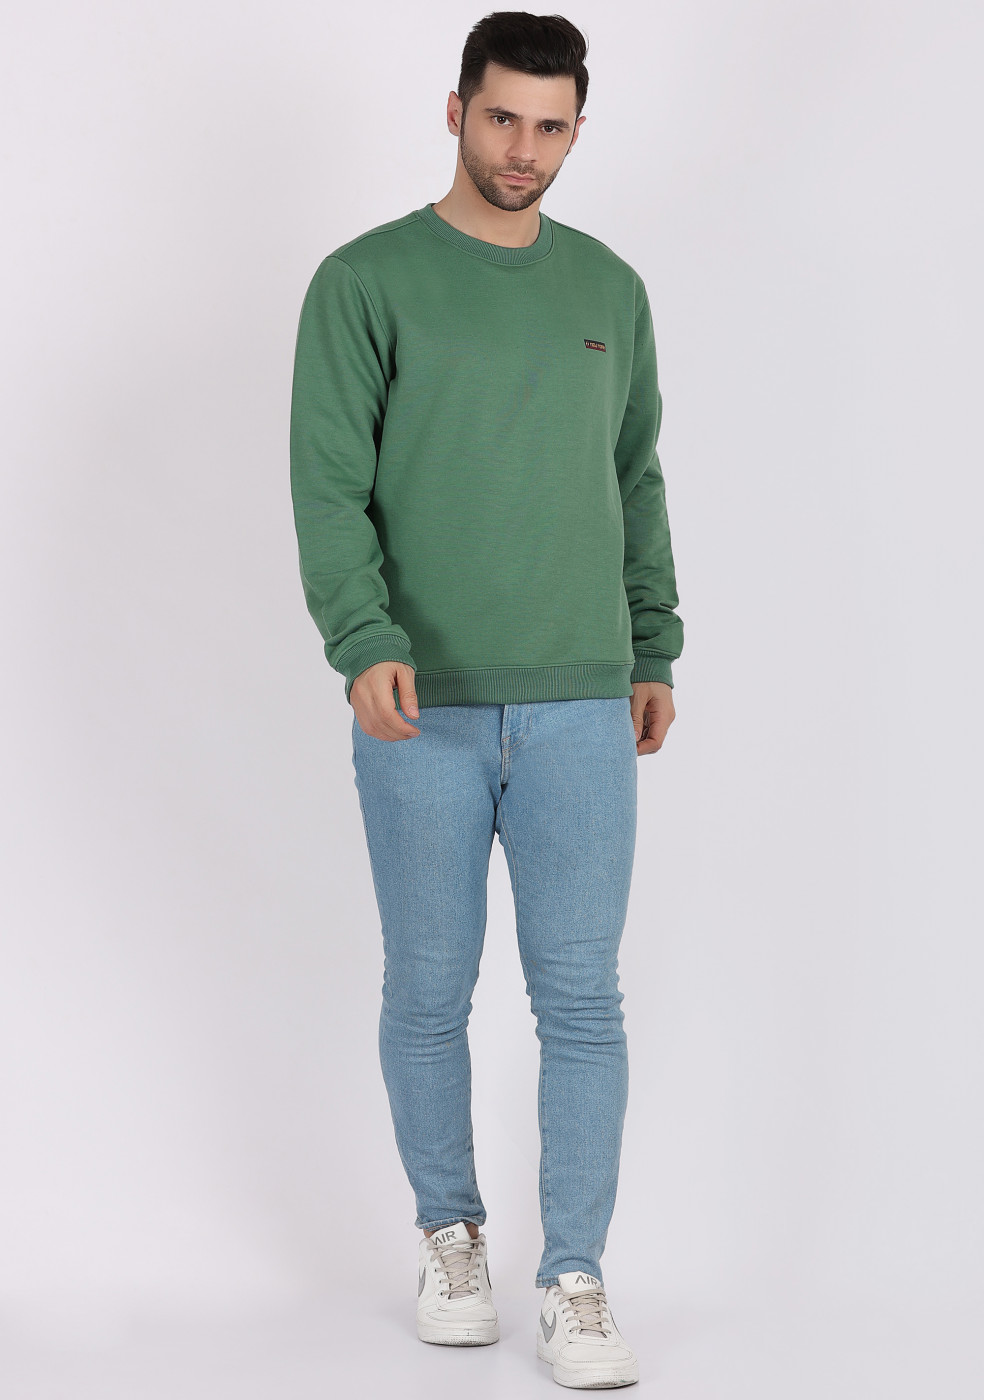 HUKH Moss Green Color Sweatshirt For Men